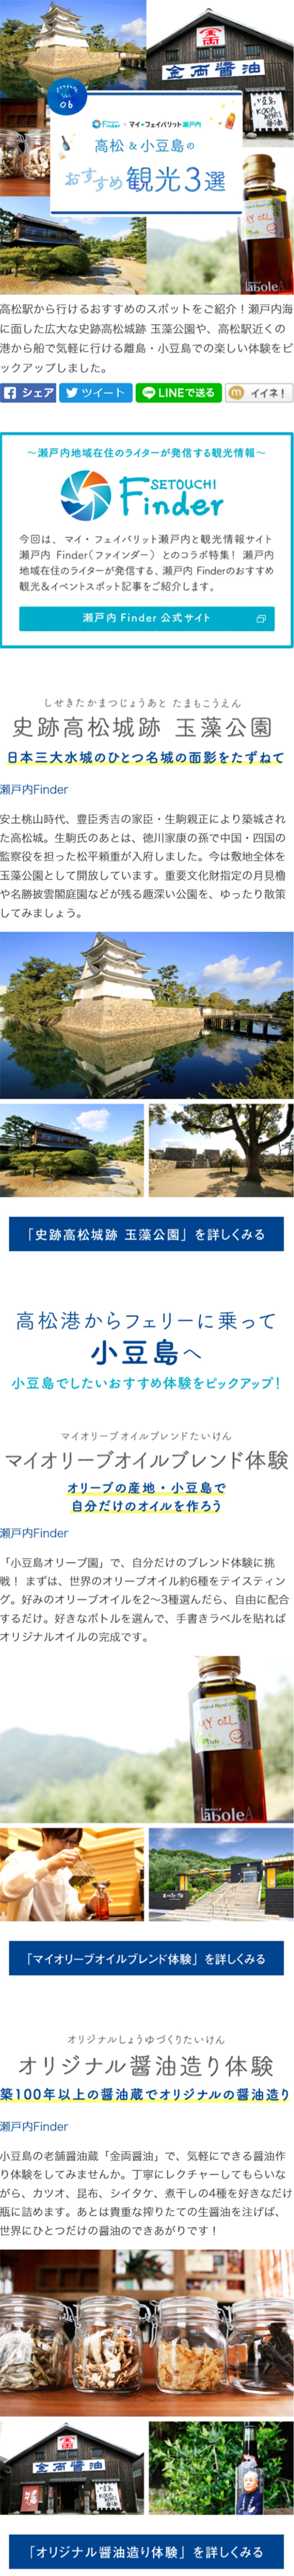 高松&小豆島のおすすめ観光3選_sp_1